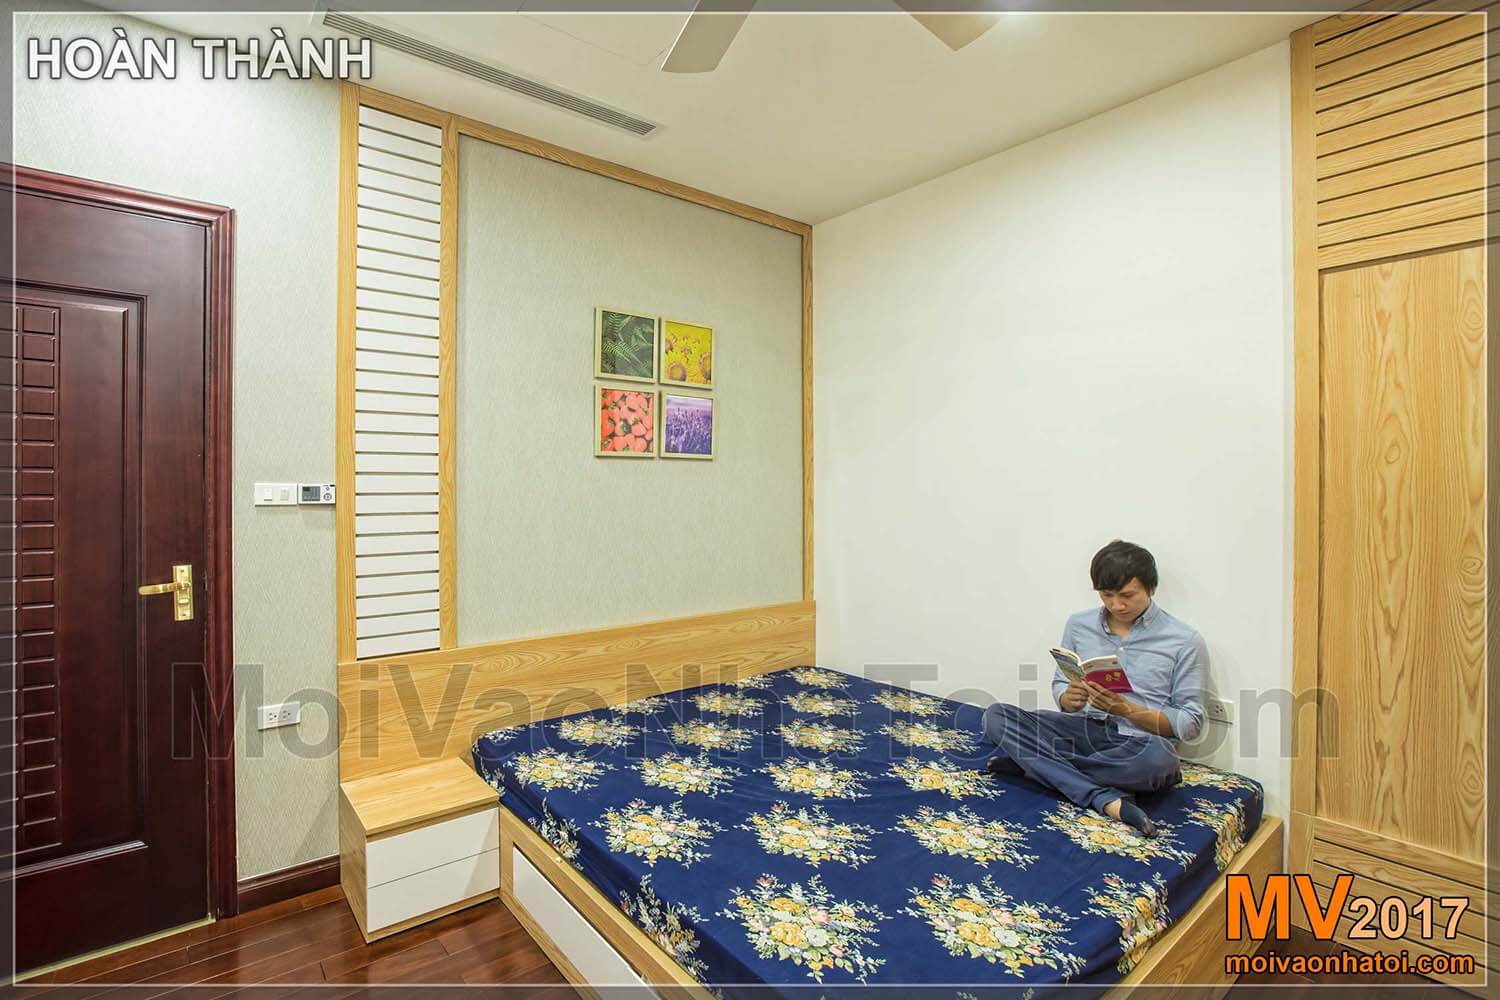 ห้องนอนของอพาร์ทเมนท์รอยัลซิตี้ขนาด 100 ตารางเมตร